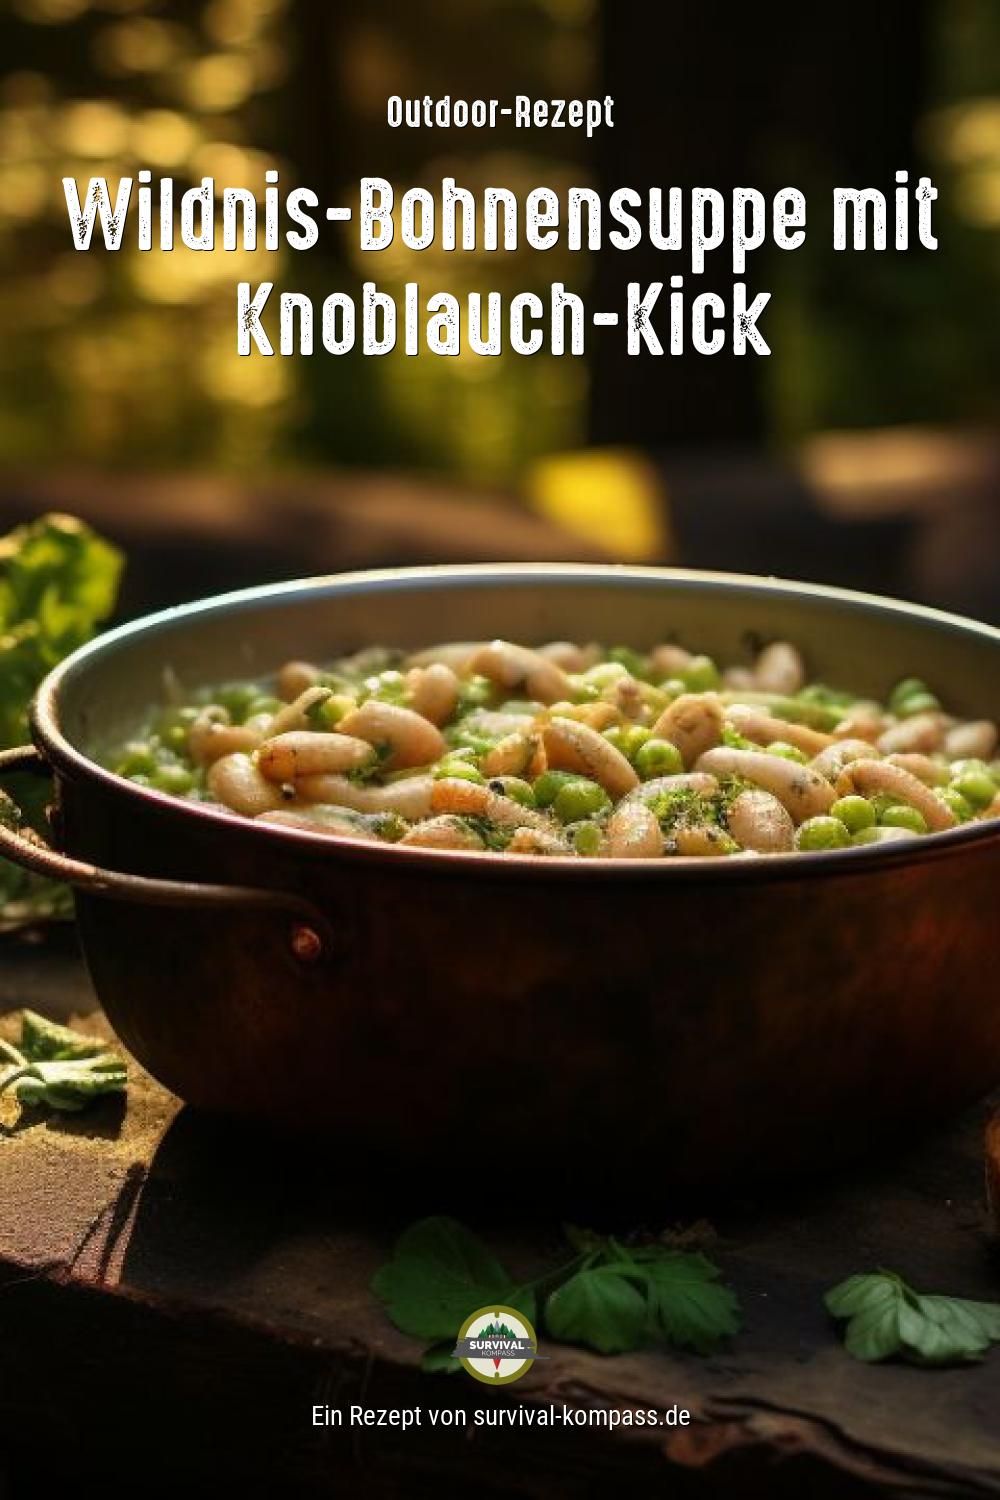 Wildnis-Bohnensuppe mit Knoblauch-Kick